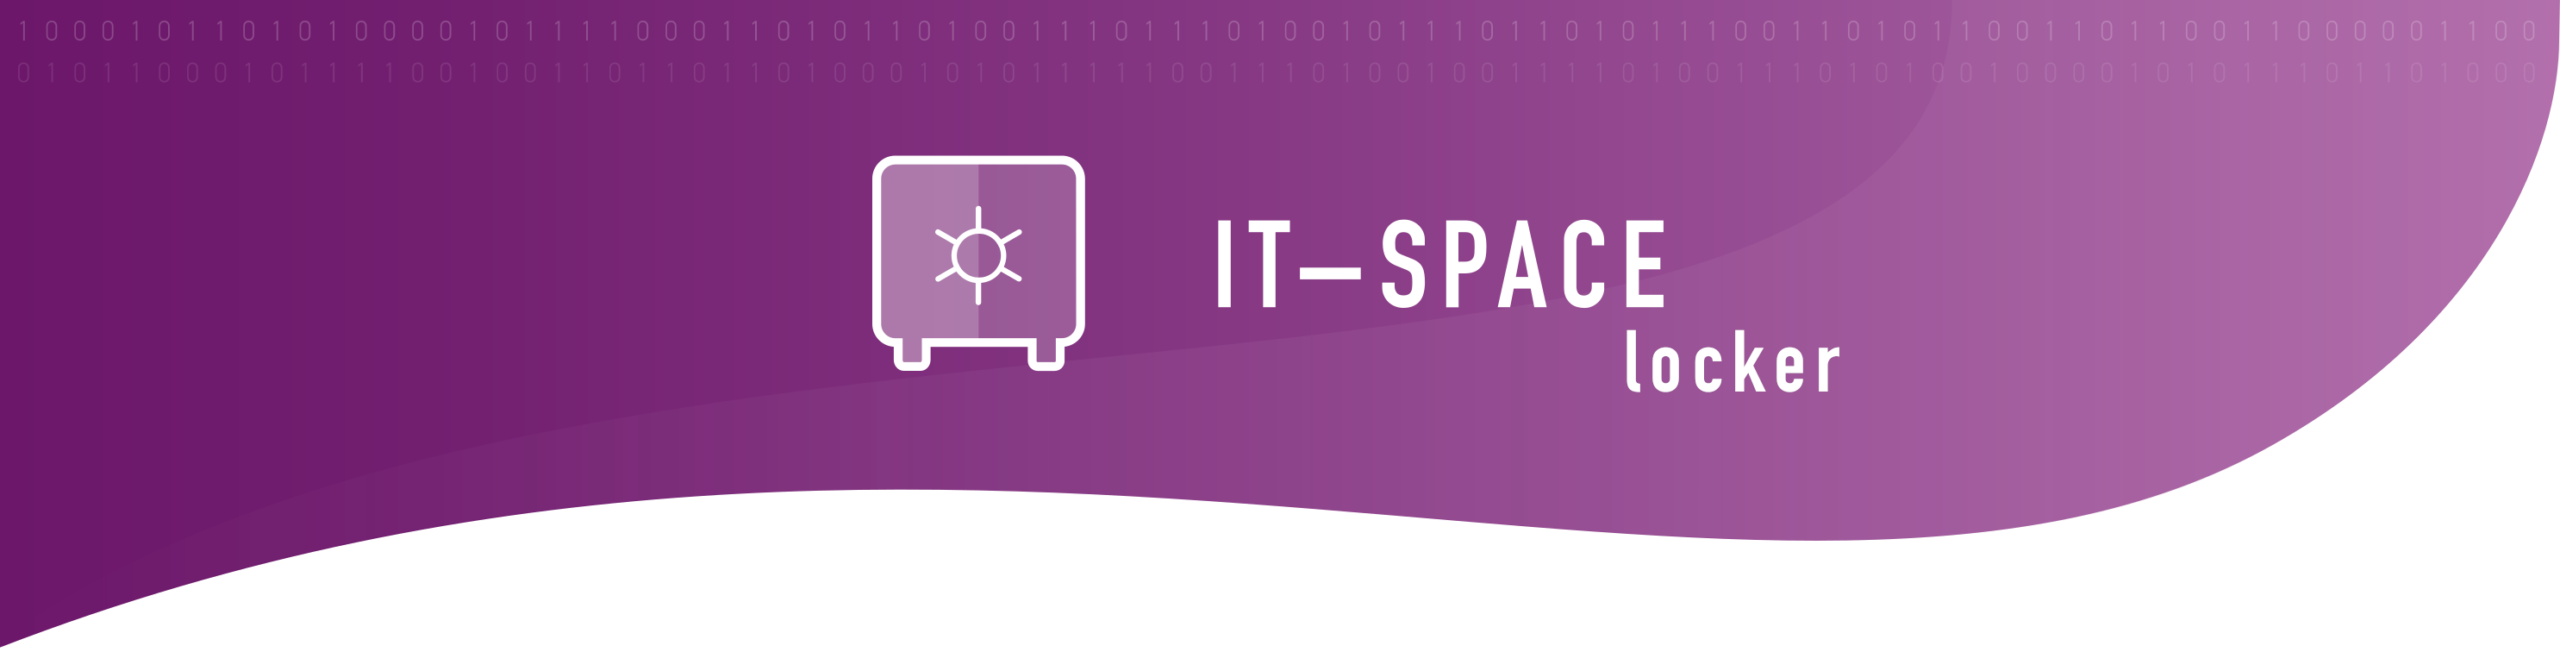 IT-SPACE locker_Produktbanner